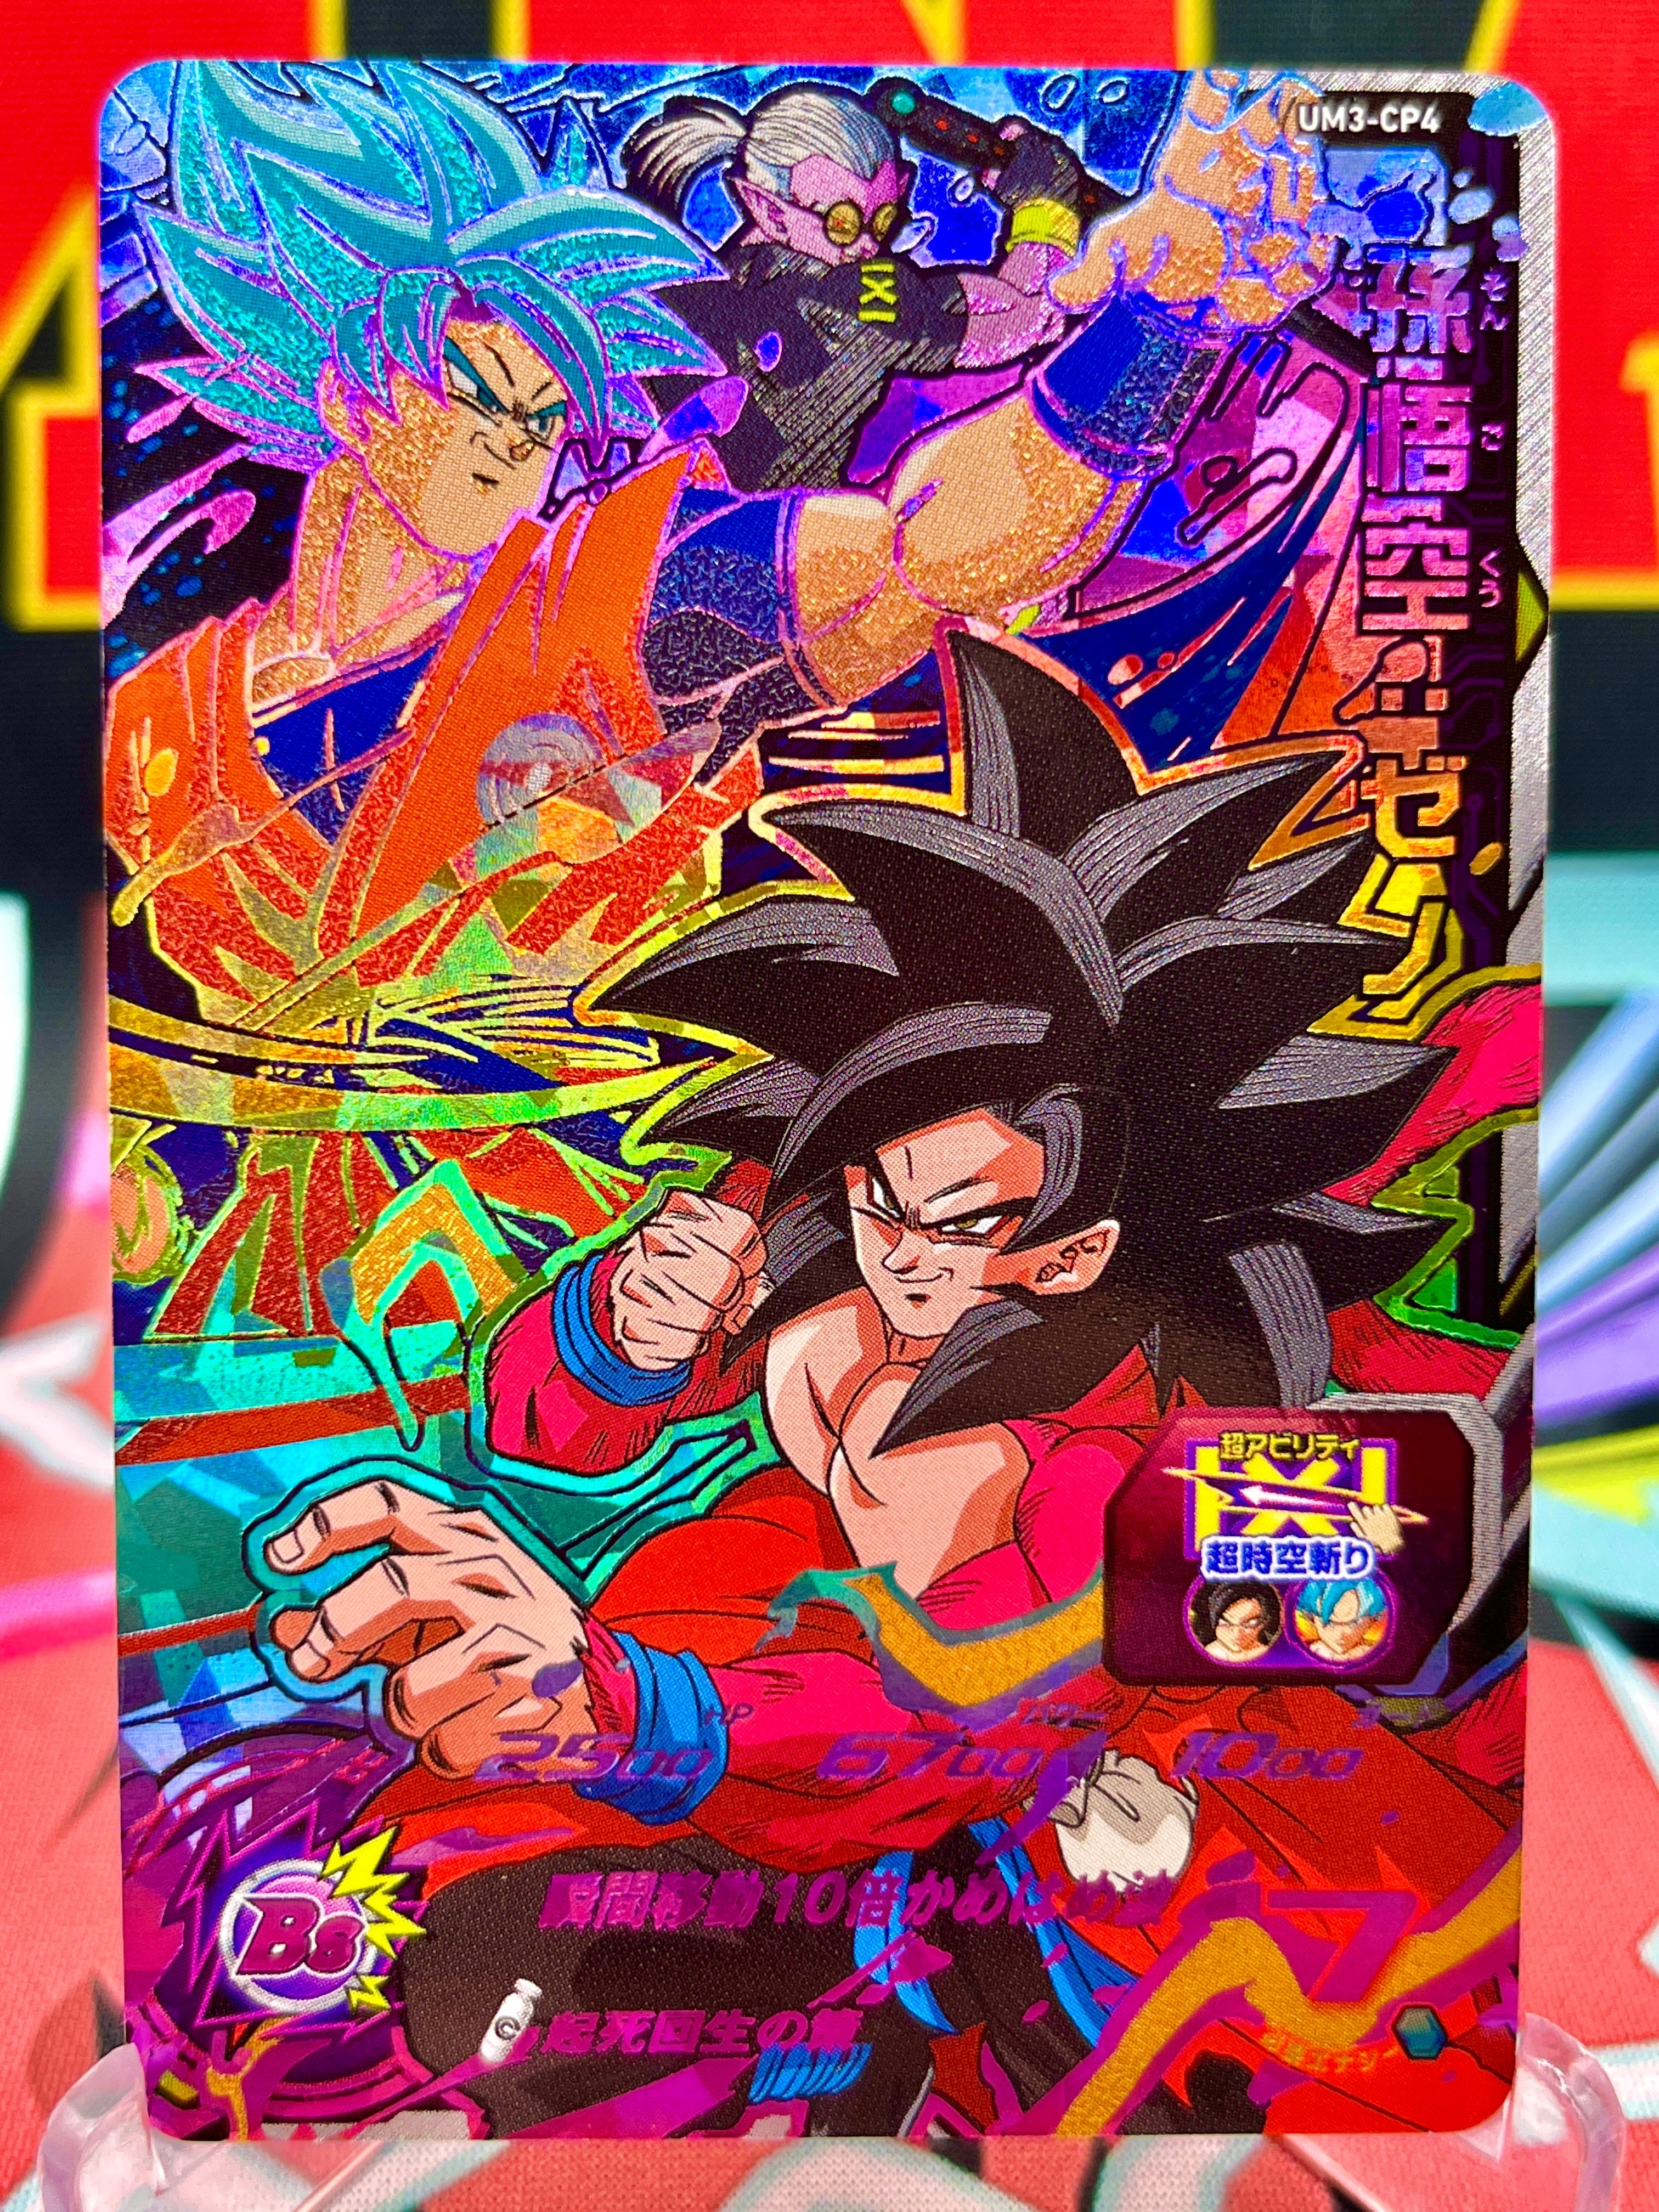 UM3-CP4 Son Goku: Xeno CP (2018)